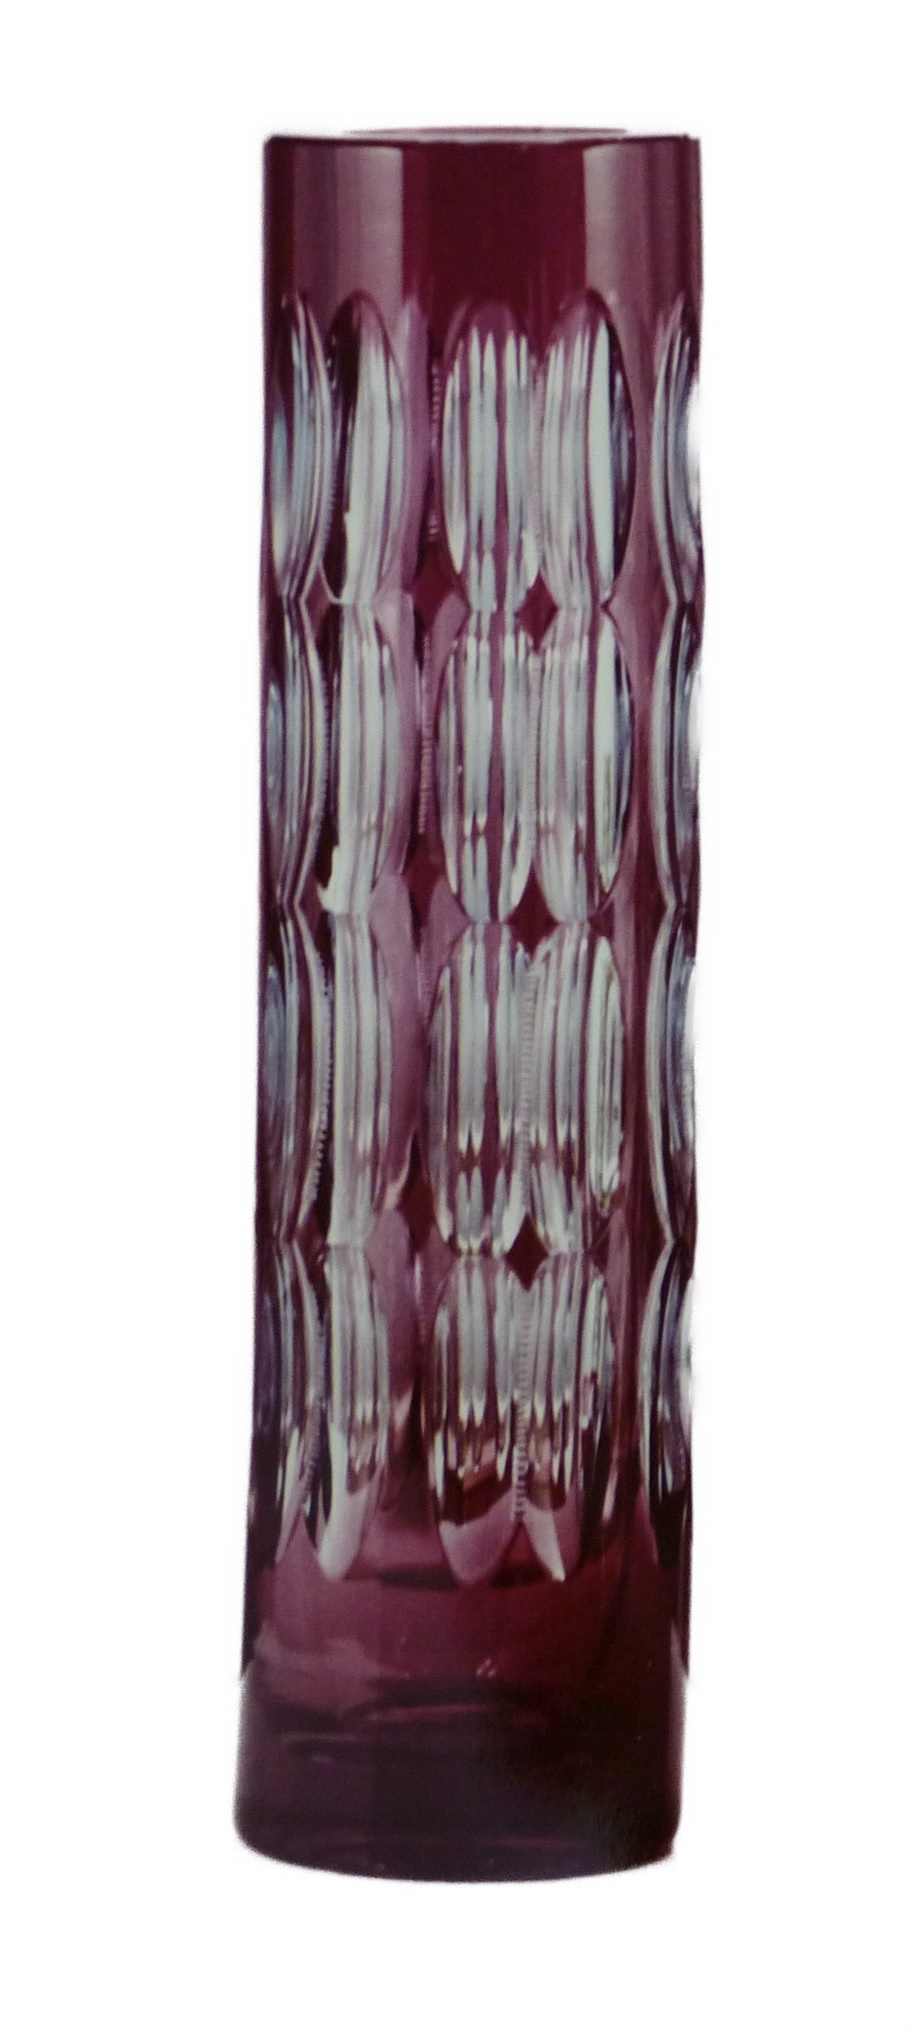 Borské sklo - 46655/87045/10, Vase